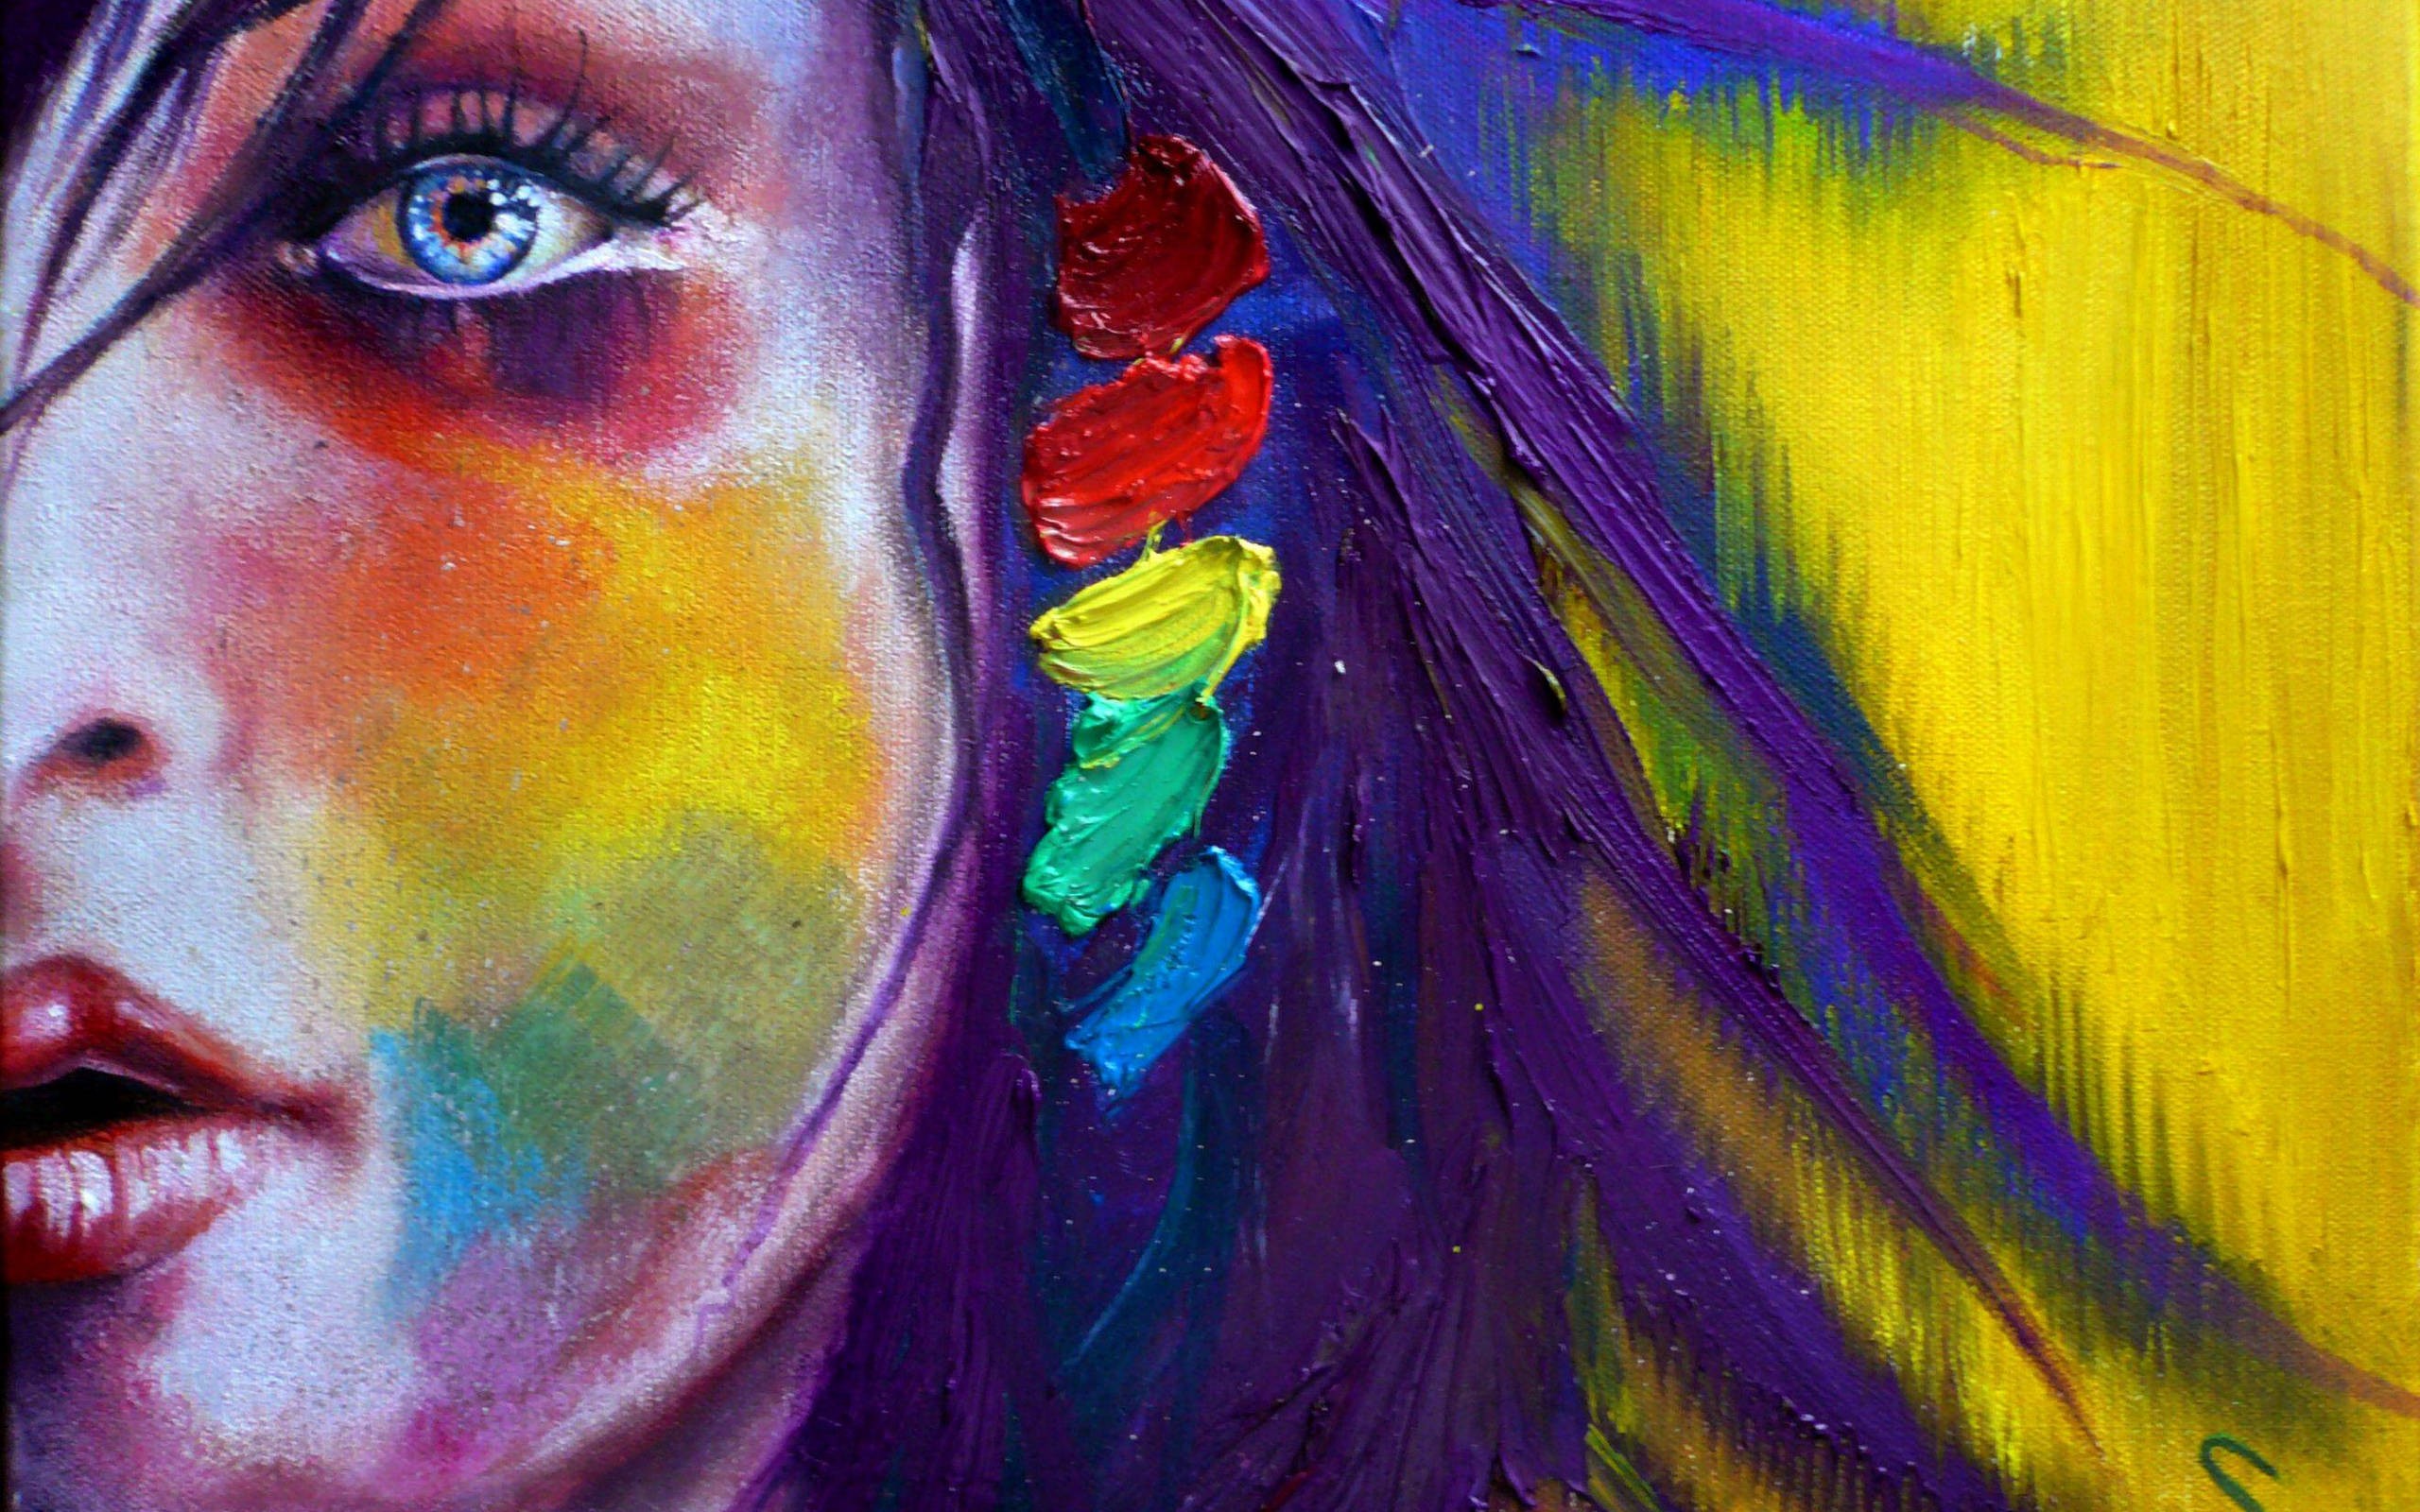 Paint Abstract Art Women Eye Wallpaper Background 64260 2560x1600px 2560x1600